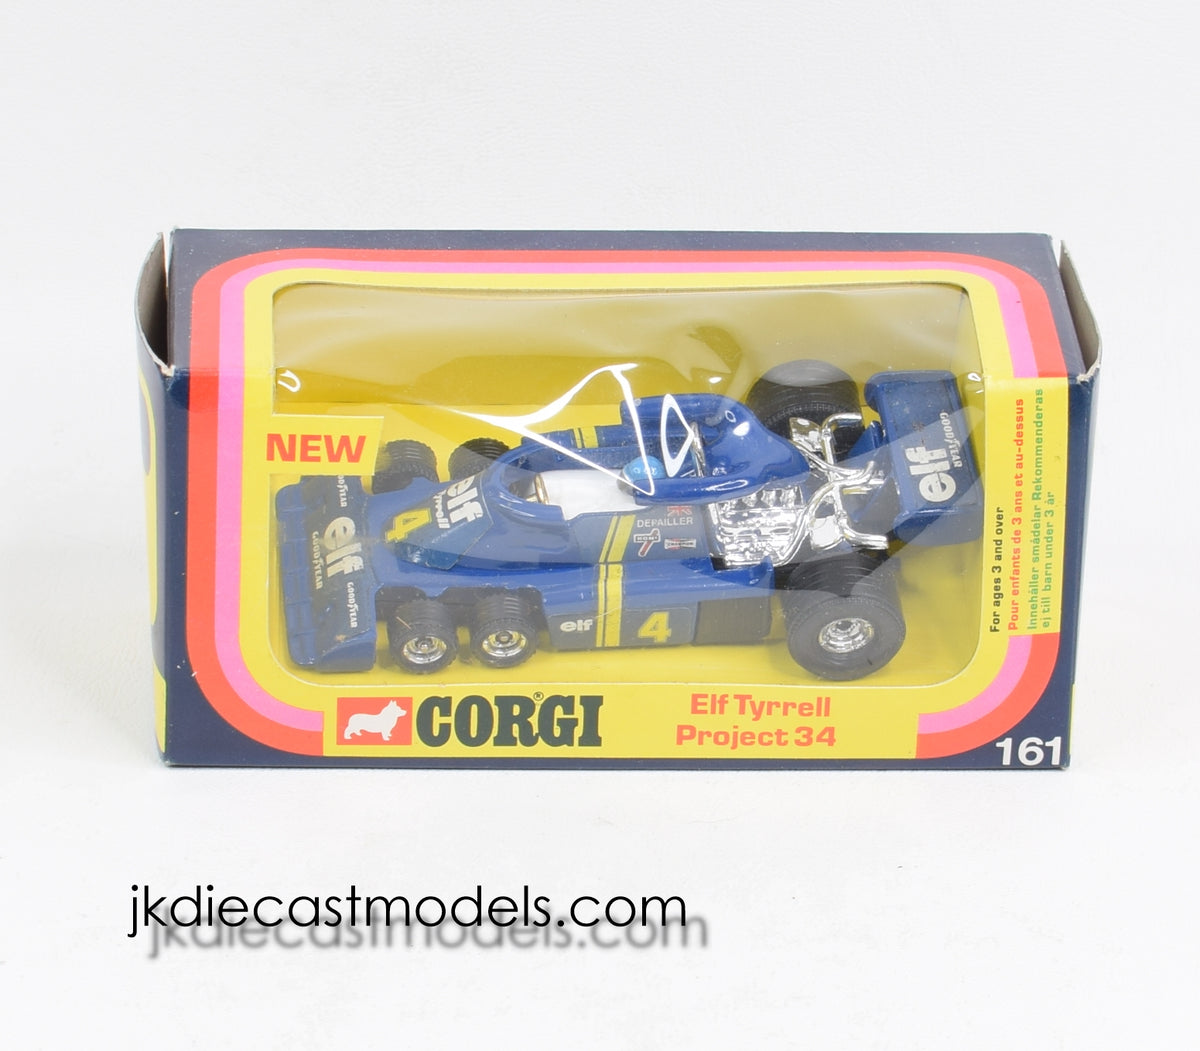 Corgi toys 161 Elf Tyrrell Virtually Mint/Lovely box